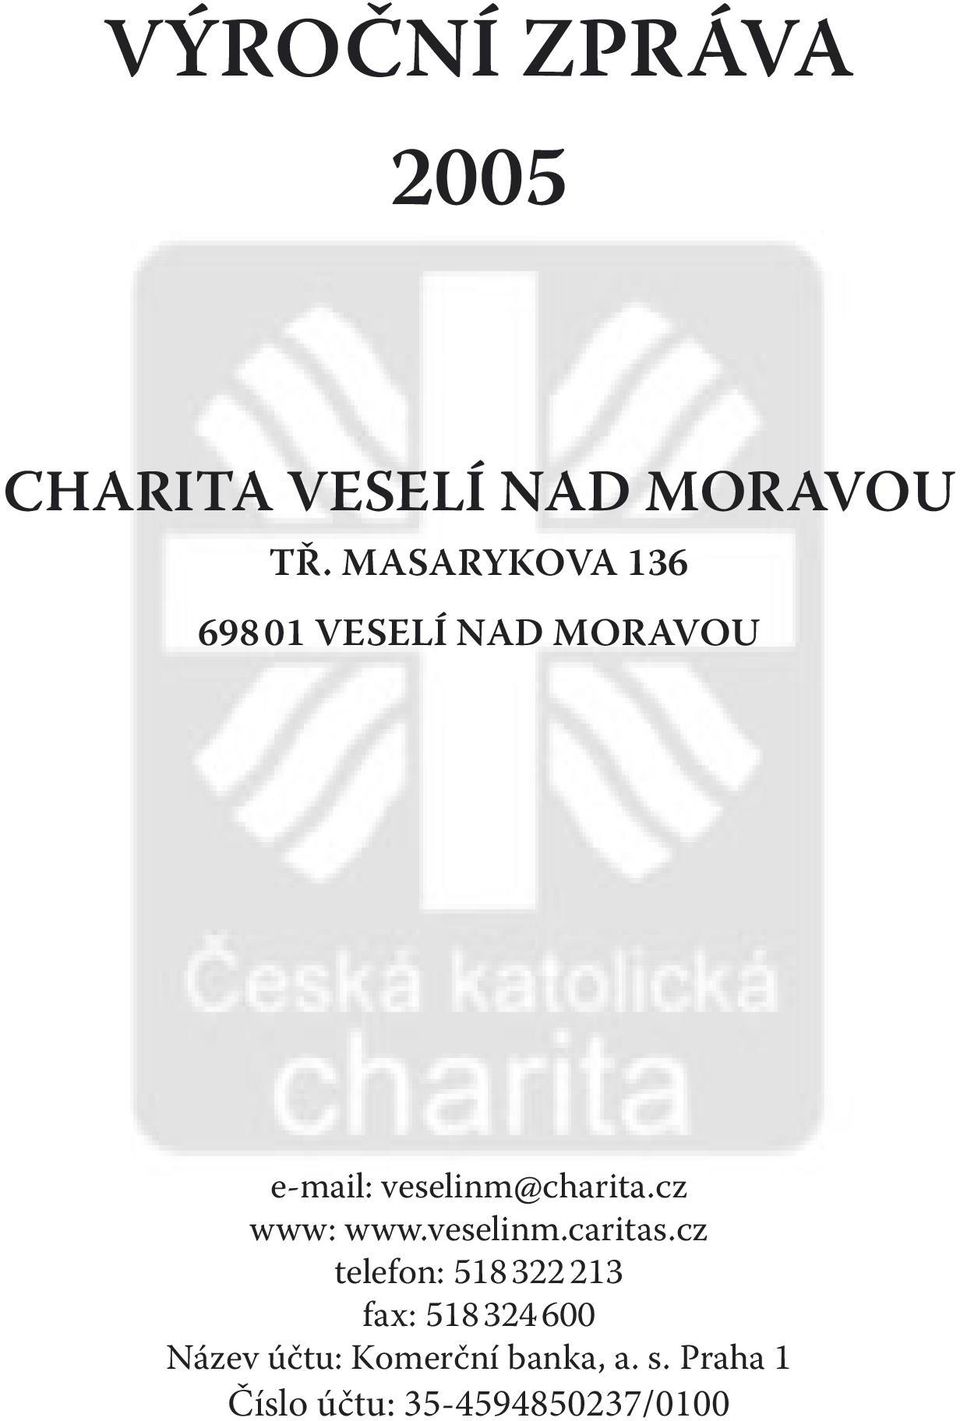 veselinm@charita.cz www: www.veselinm.caritas.